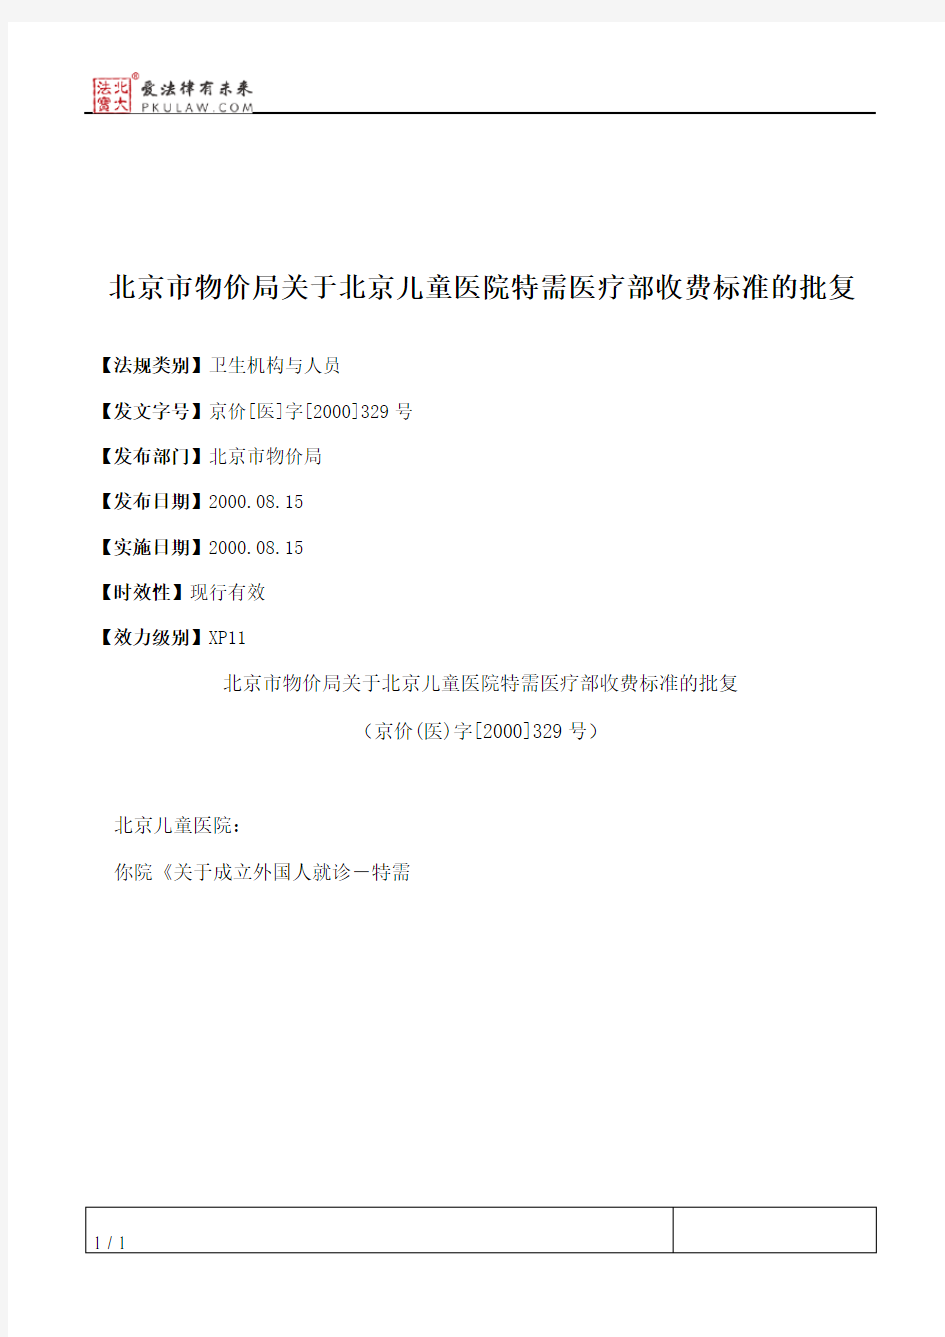 北京市物价局关于北京儿童医院特需医疗部收费标准的批复